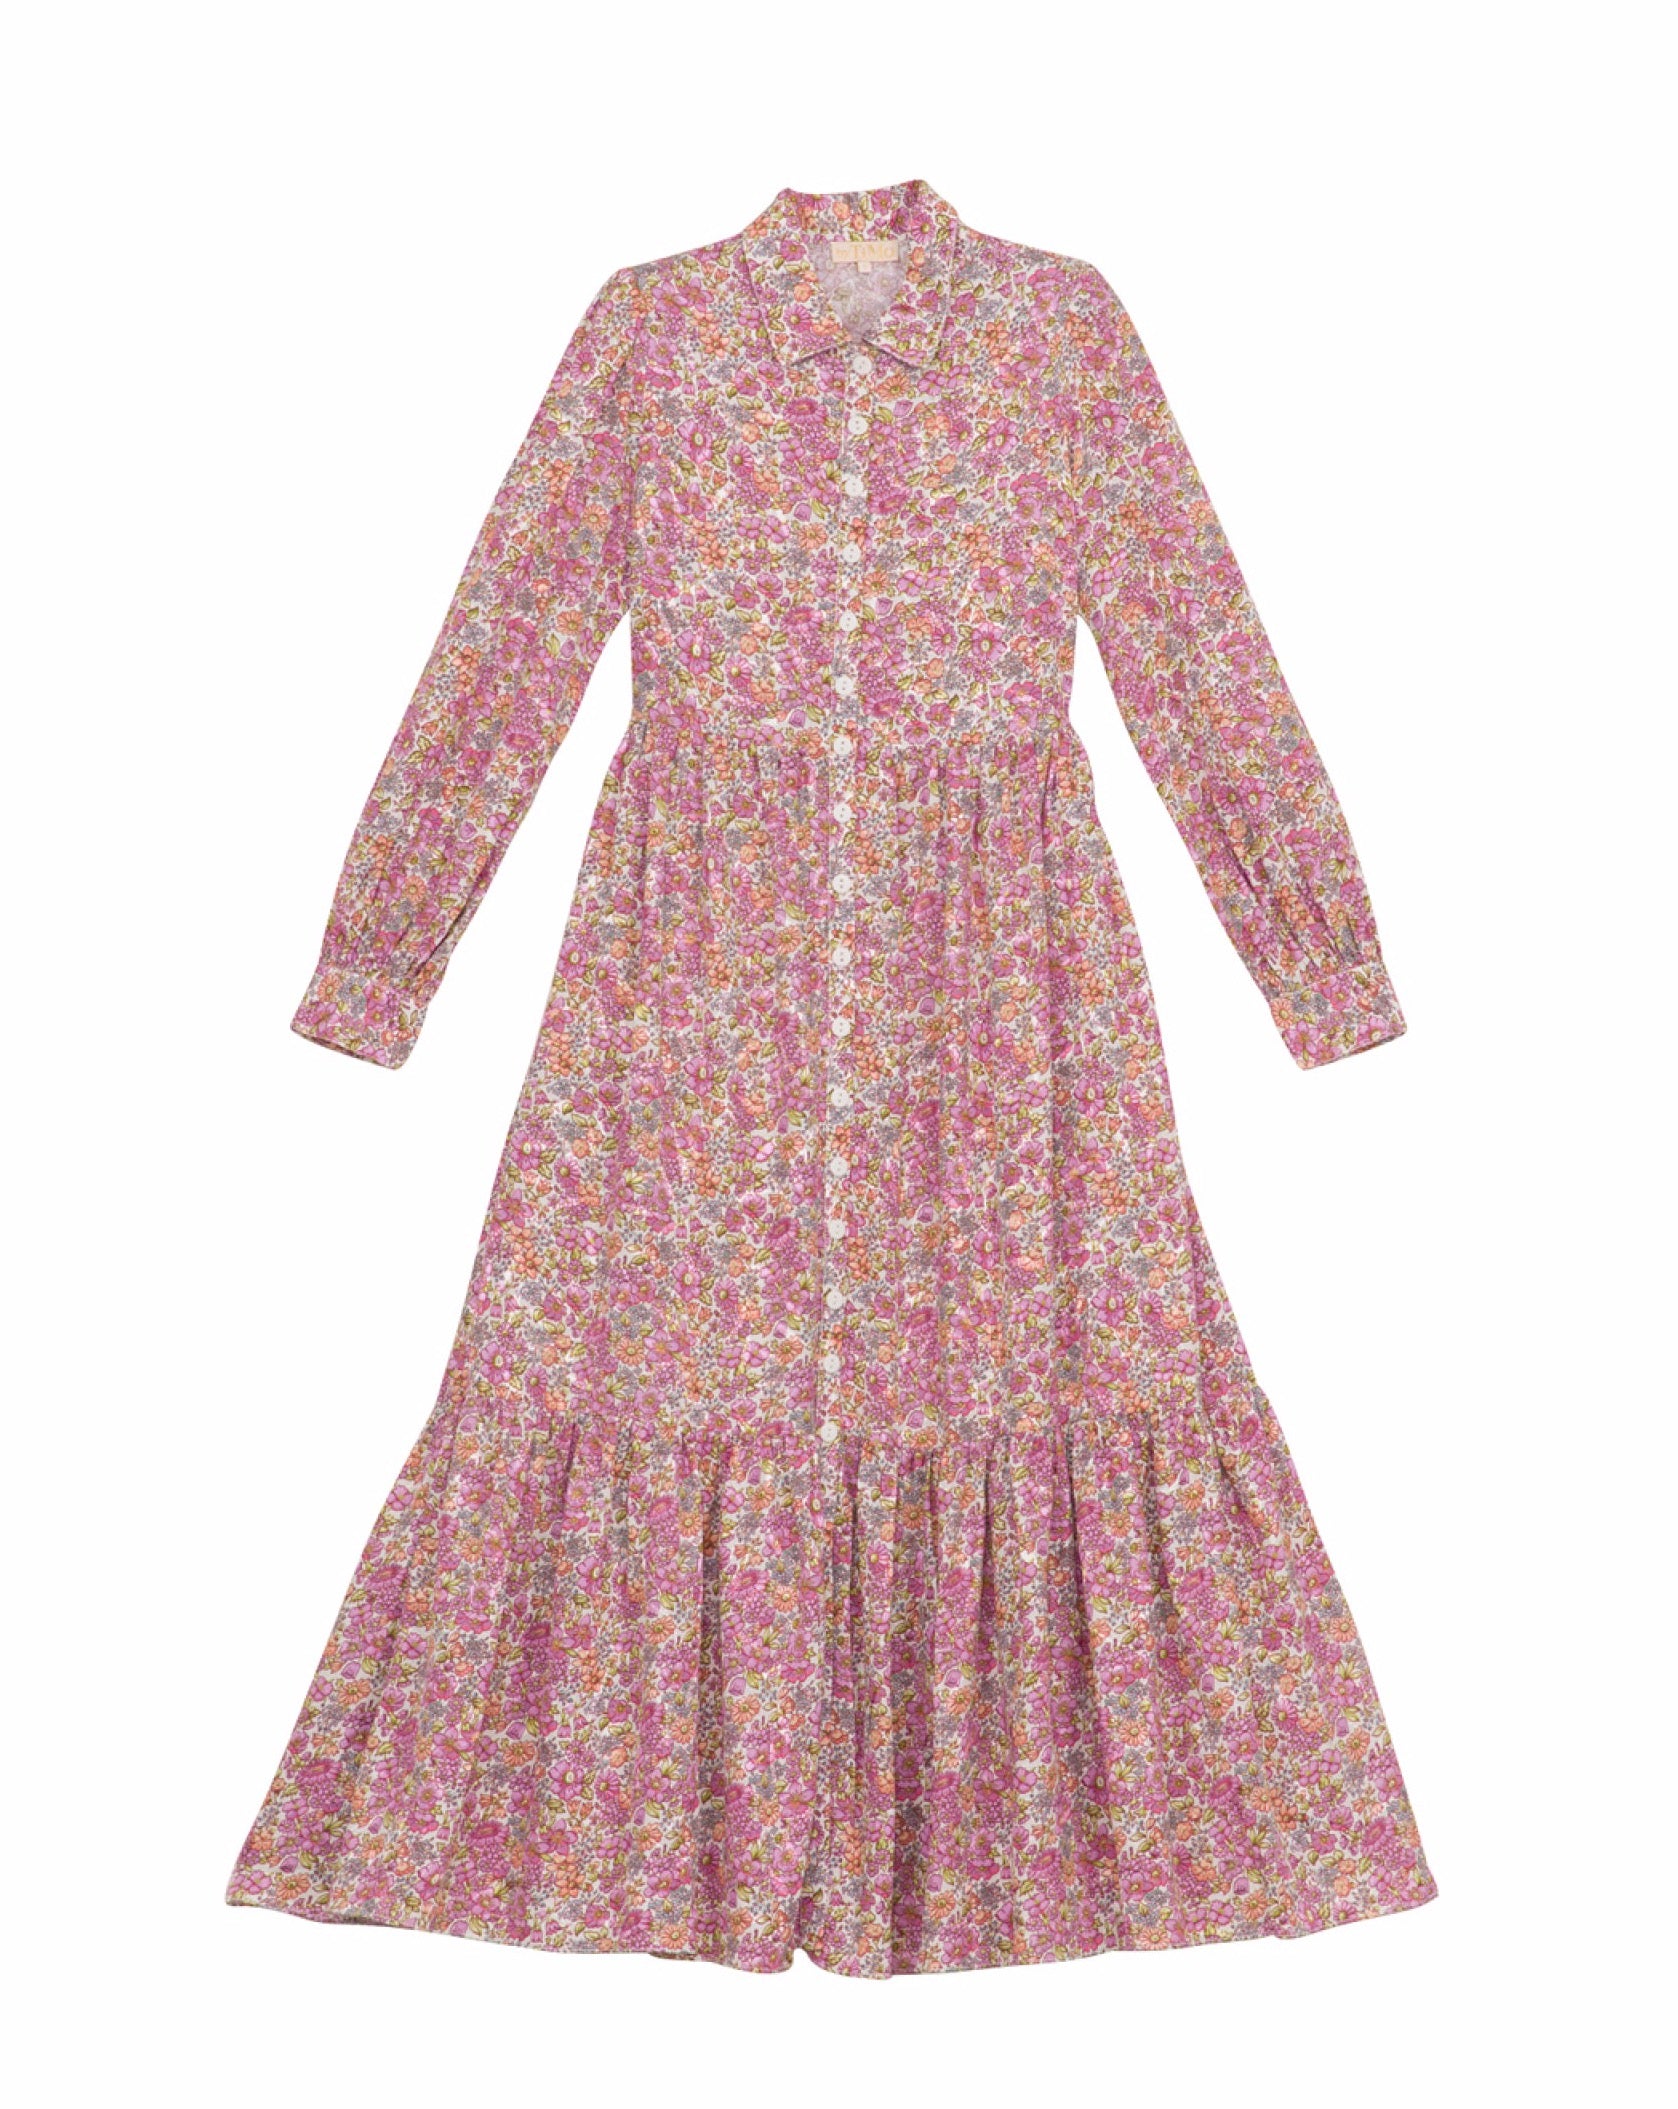 Cotton Jacquard Shirt Dress - Light Field